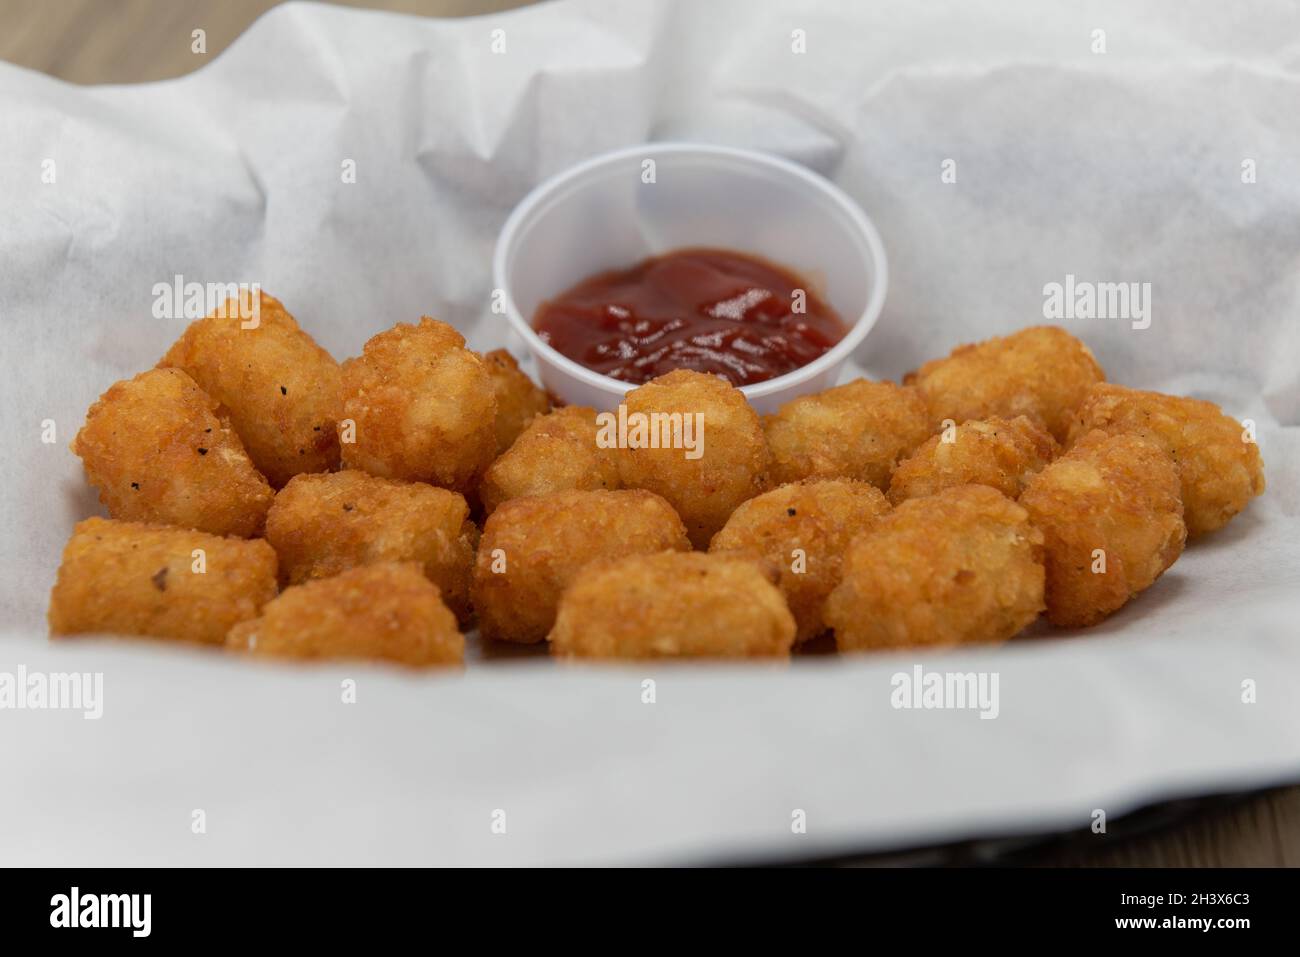 Vorspeise Bestellung eines Korbes mit knusprigen Tator Tots komplett mit Ketchup Dipping Sauce. Stockfoto